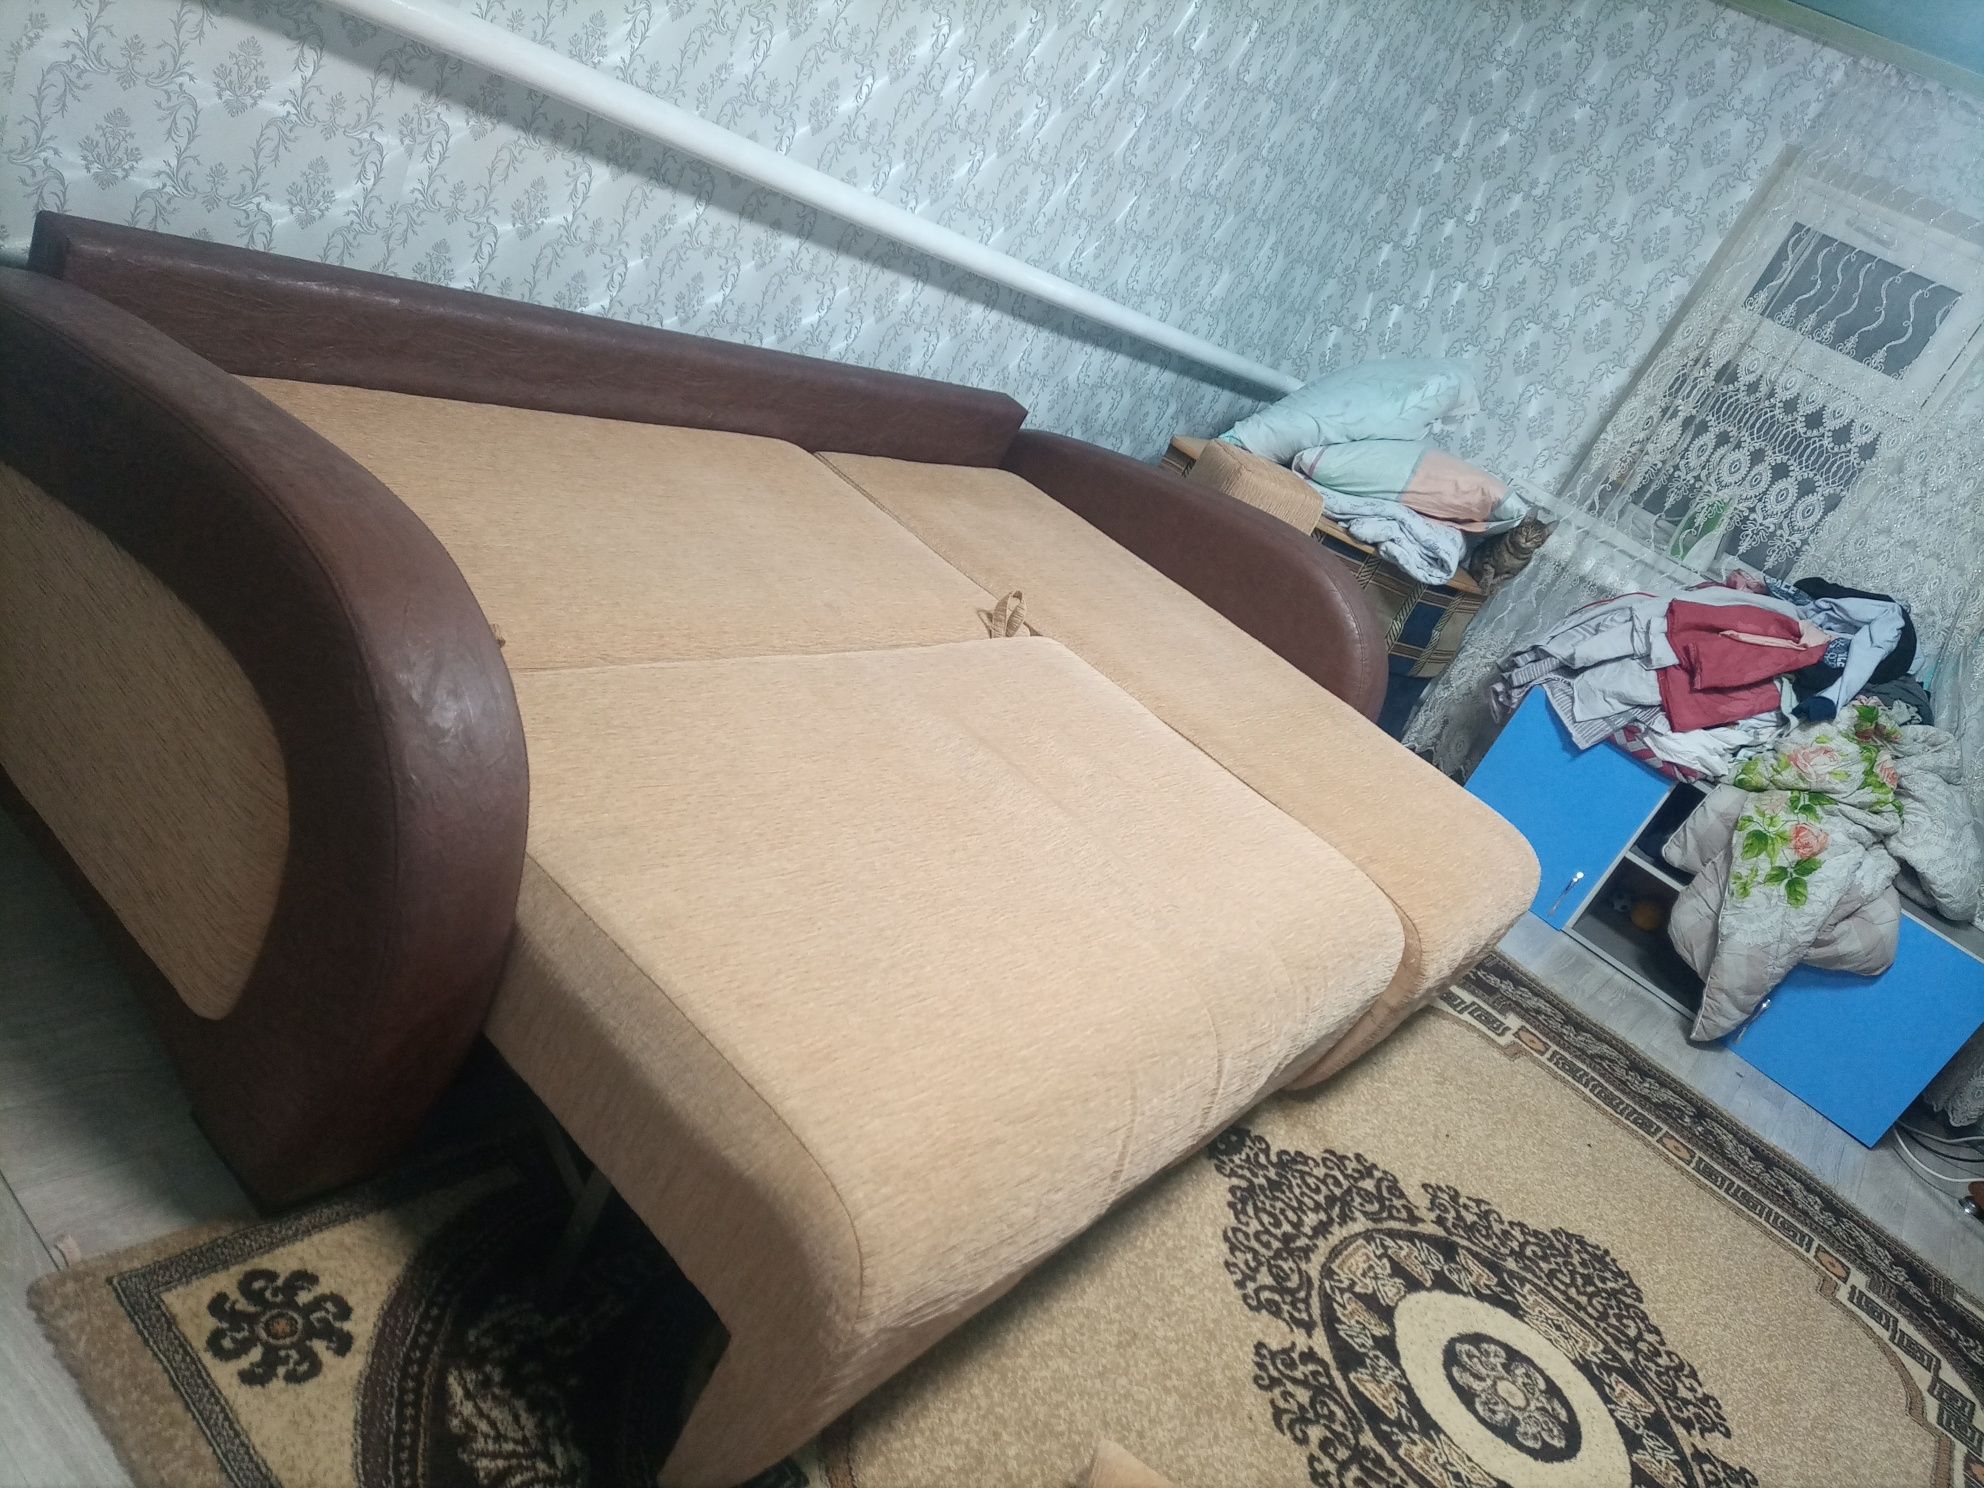 Продам мягкий угловой диван